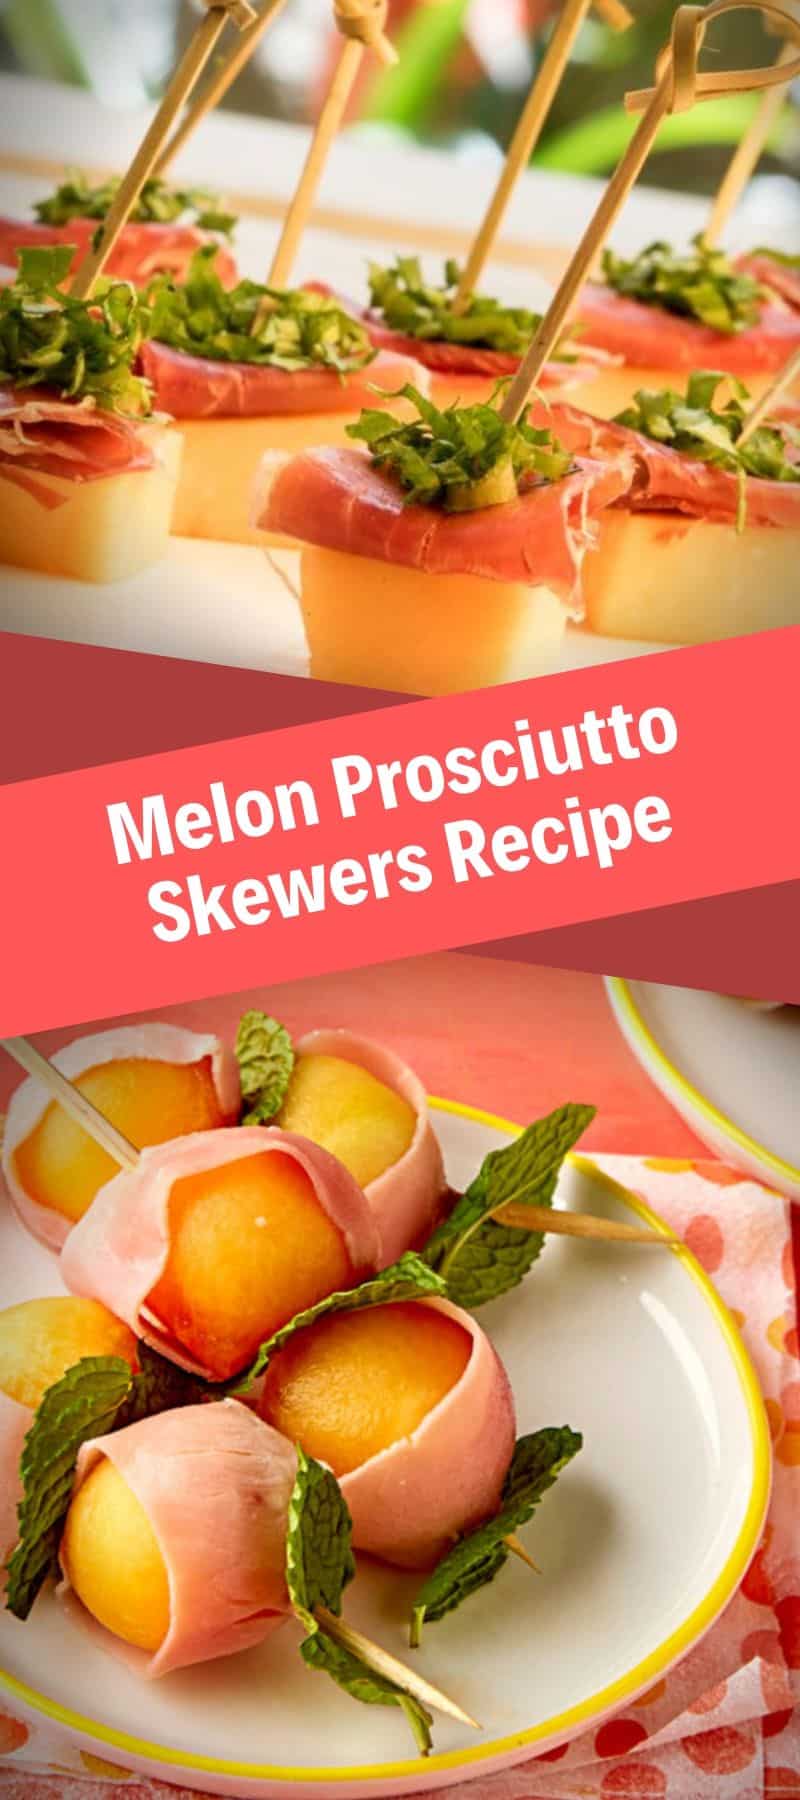 Melon Prosciutto Skewers Recipe 3